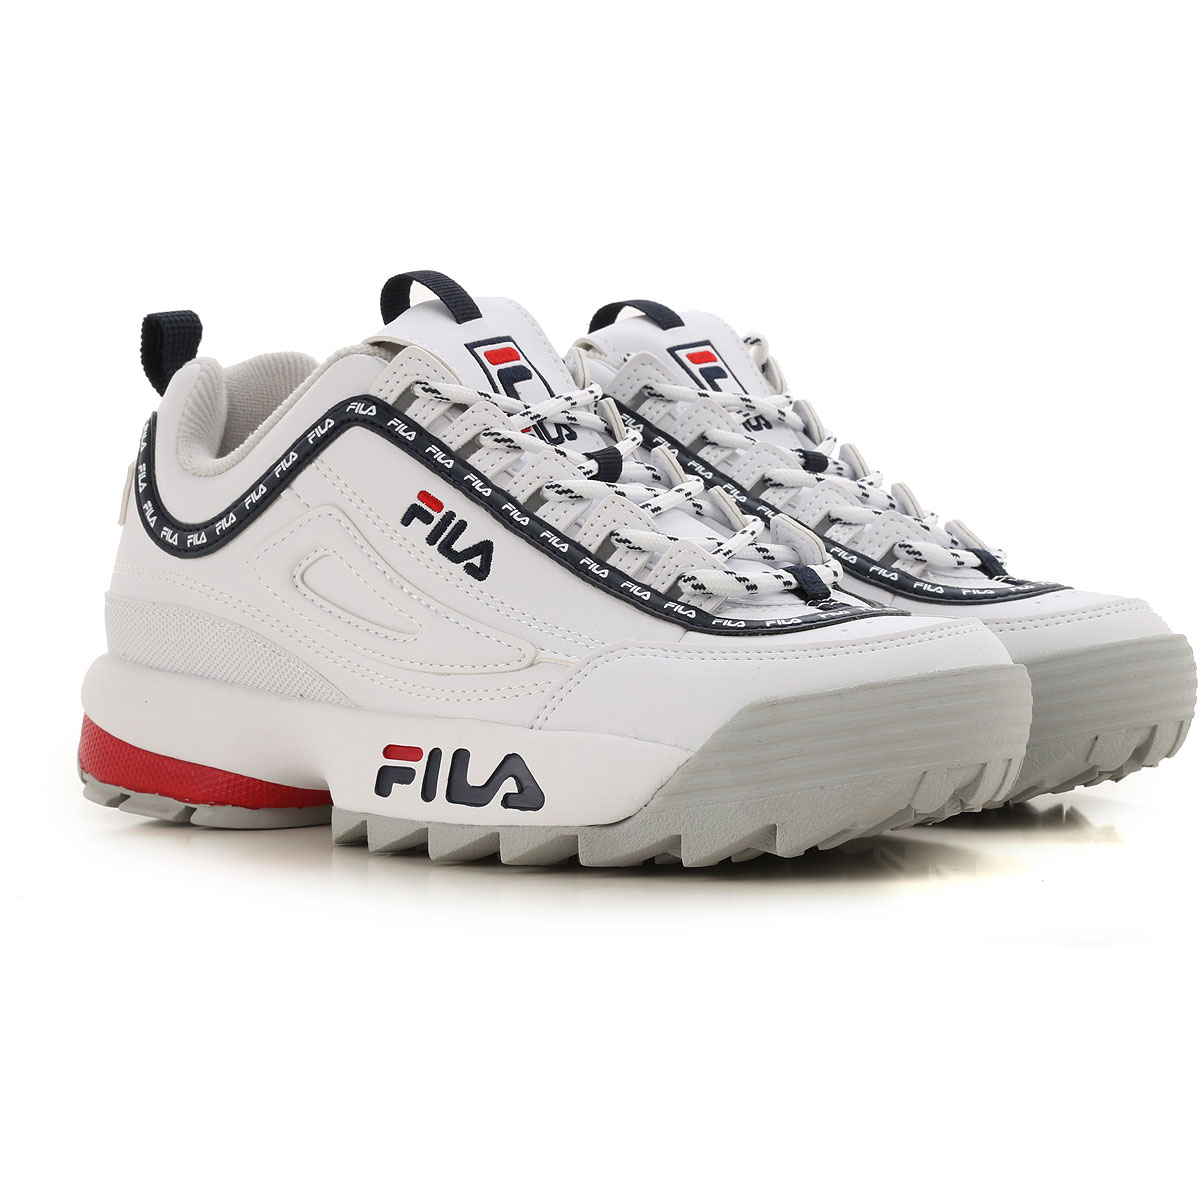 FIla Sneaker für Damen, Tennisschuh, Turnschuh Günstig im Sale, Weiss, Leder, 2017, US 7 - UK 4.5 - EU 38 US 8 - UK 5.5 - EU 39